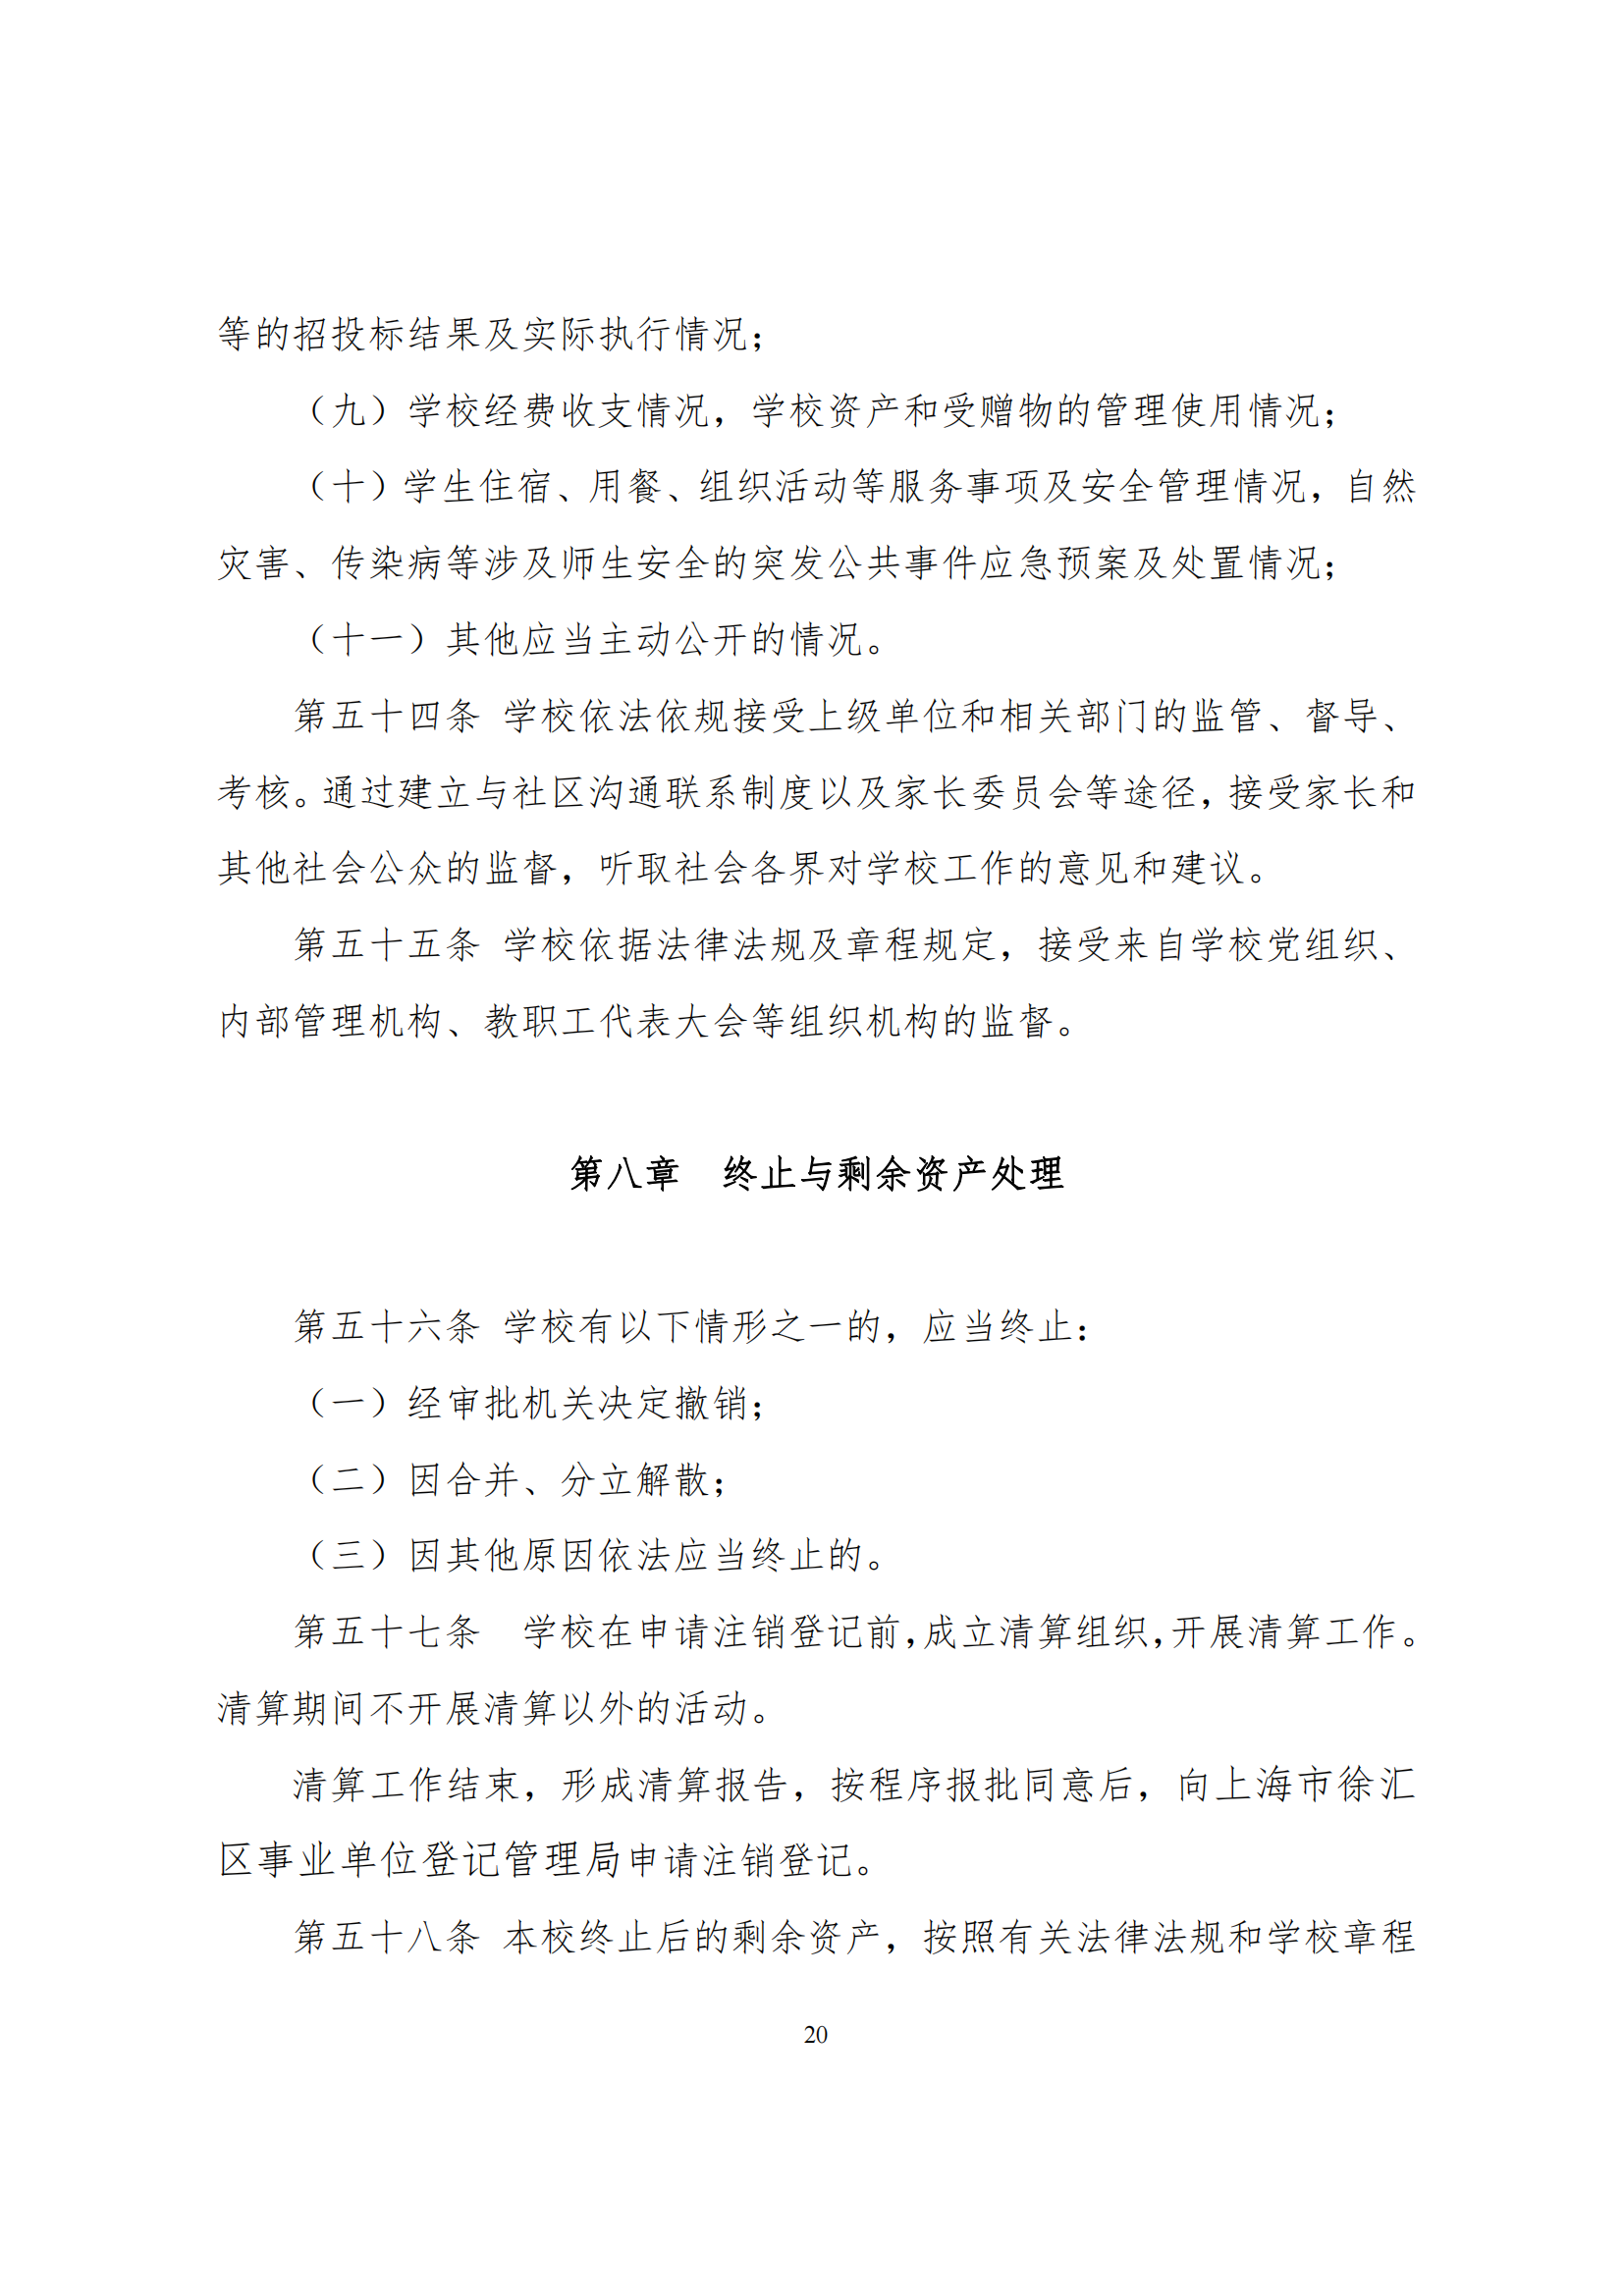 上海市徐汇区求知小学学校章程（提交稿）_19.png